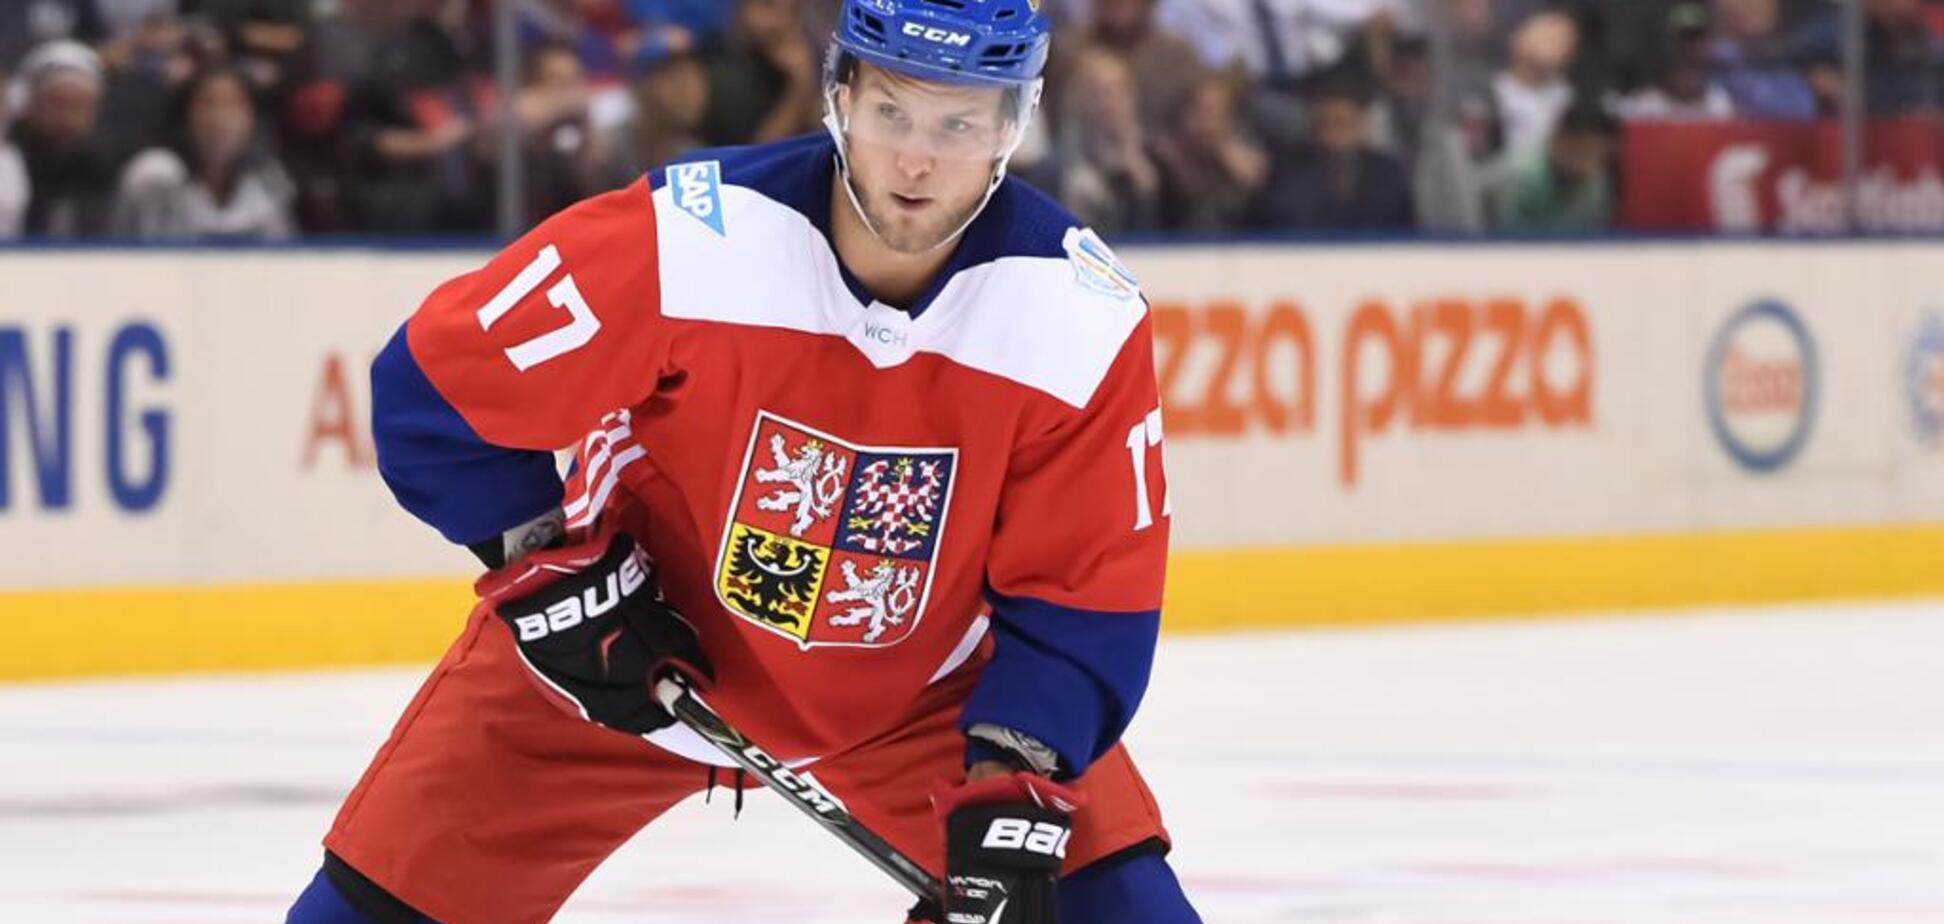 Фейл року: відомий чеський хокеїст дико осоромився в матчі НХЛ - Відеофакт